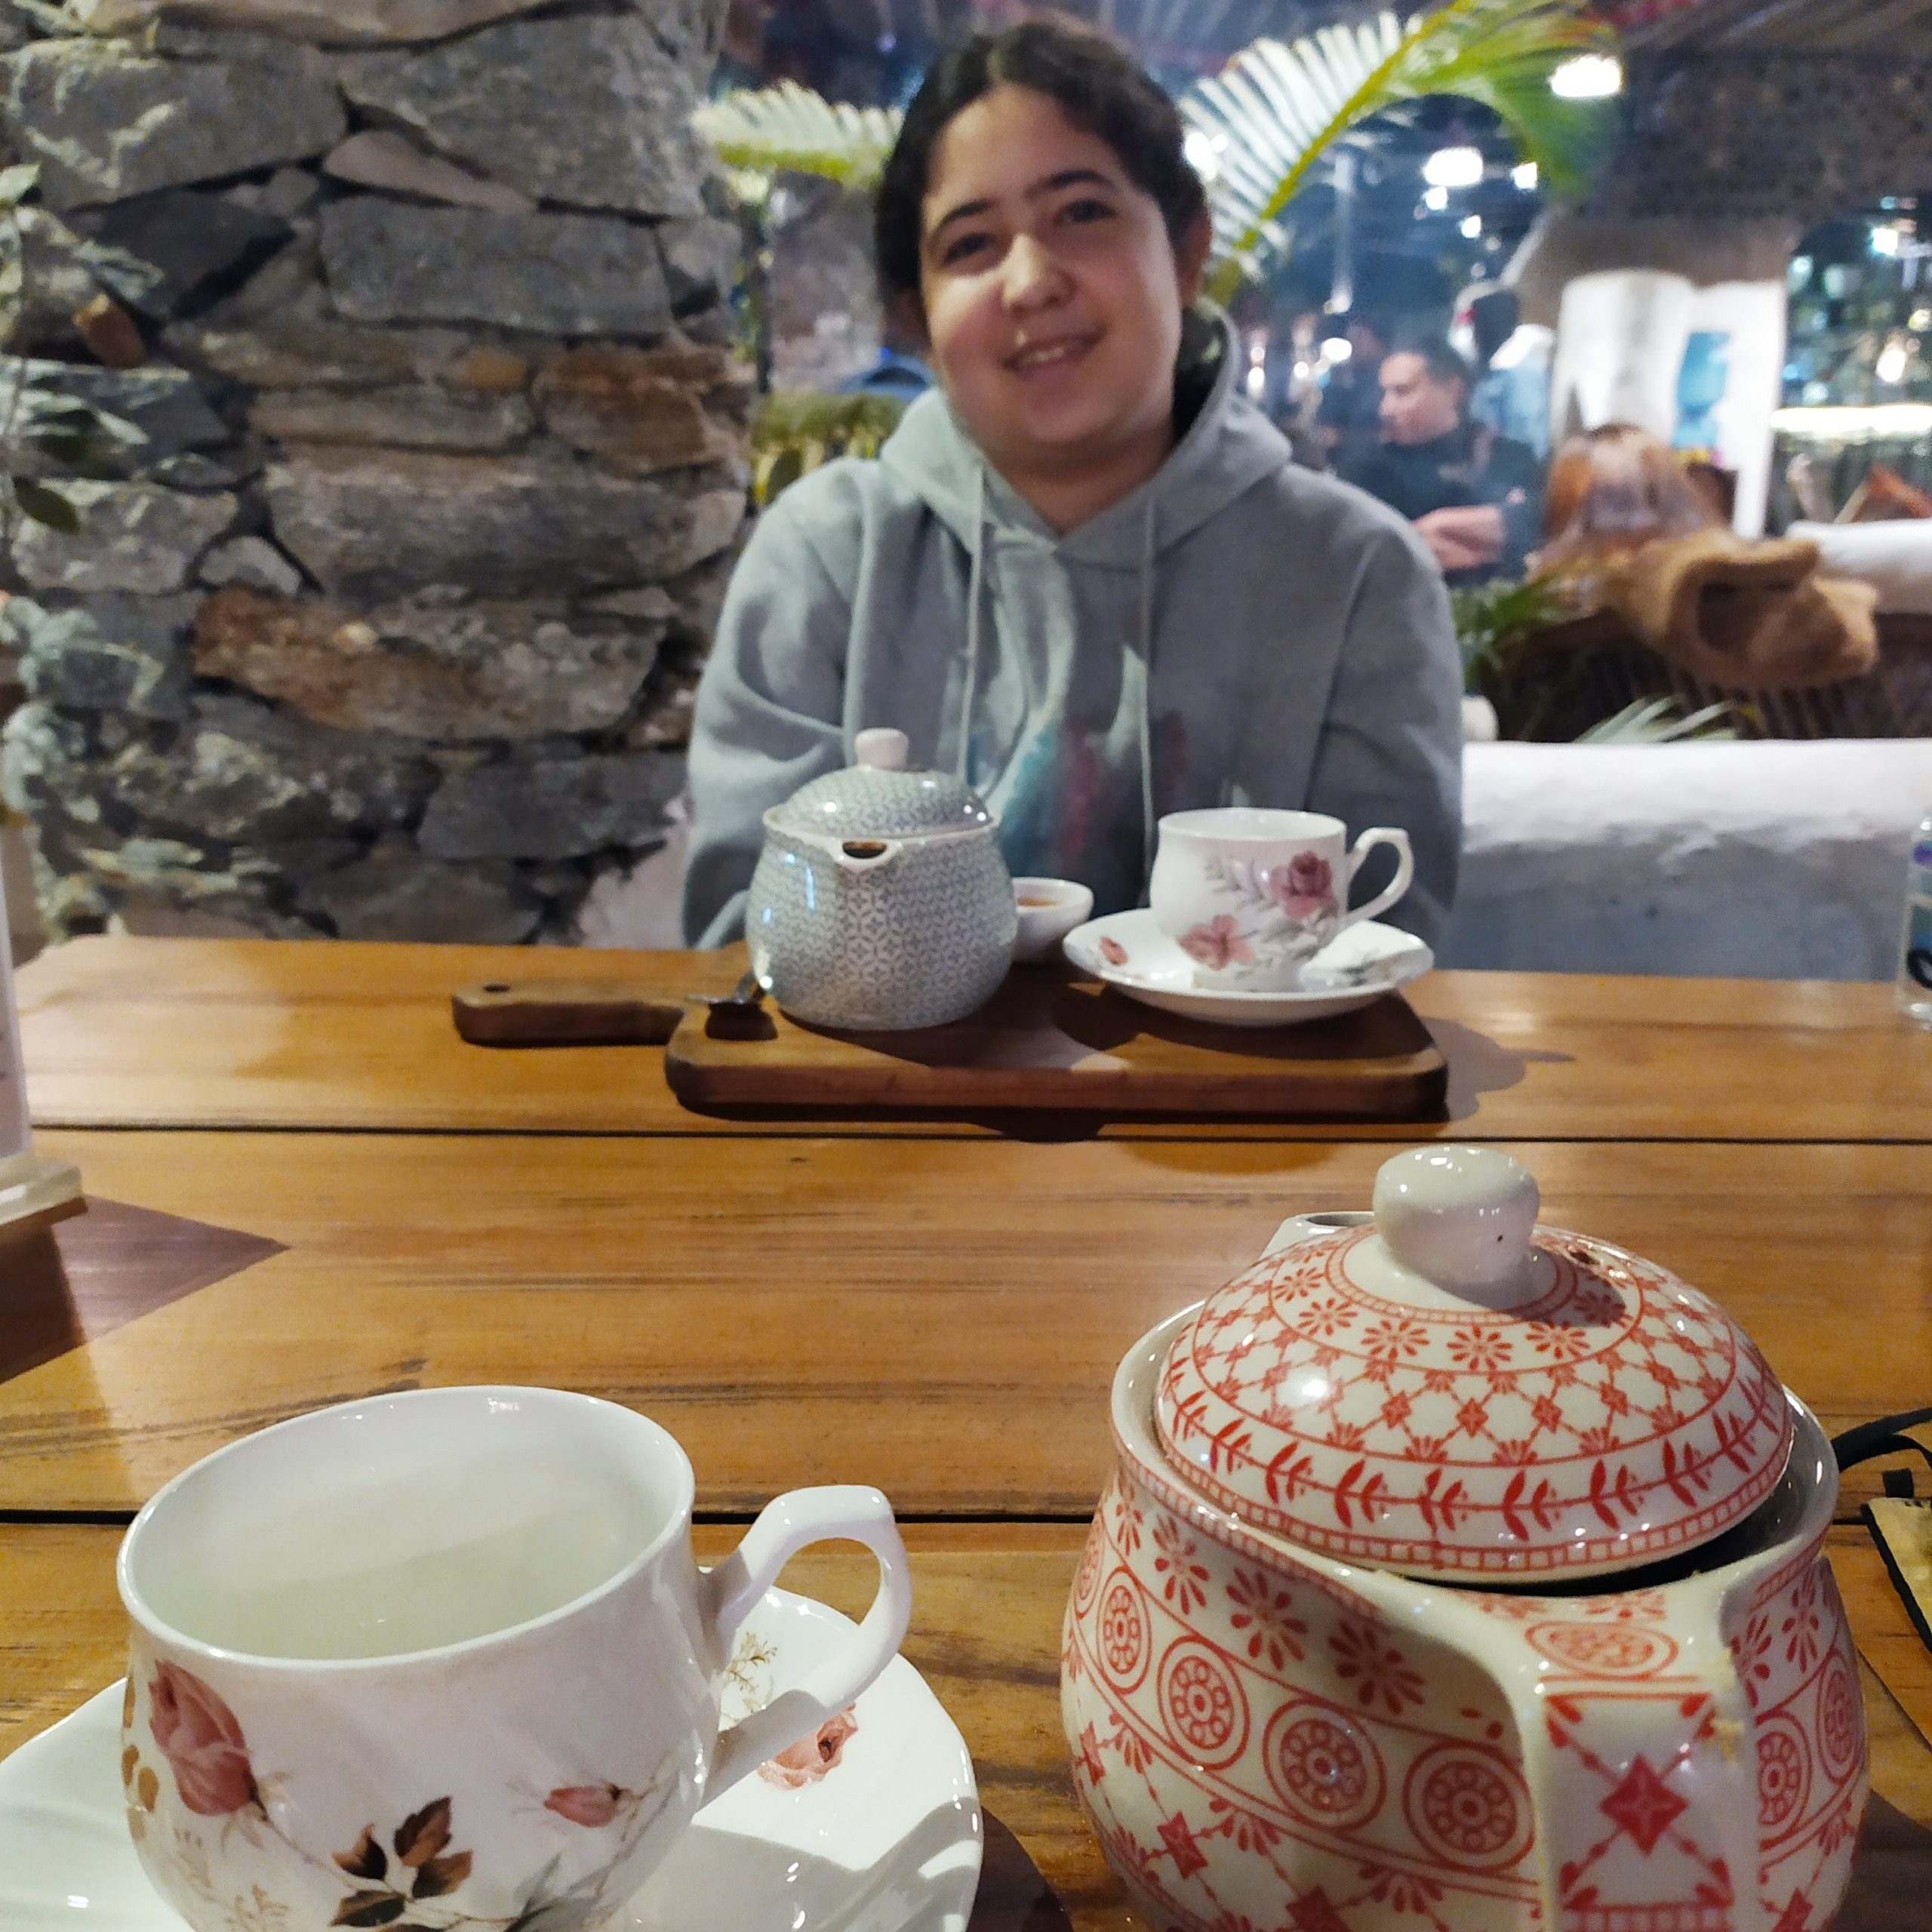 גלי ואני יושבות על כוס תה